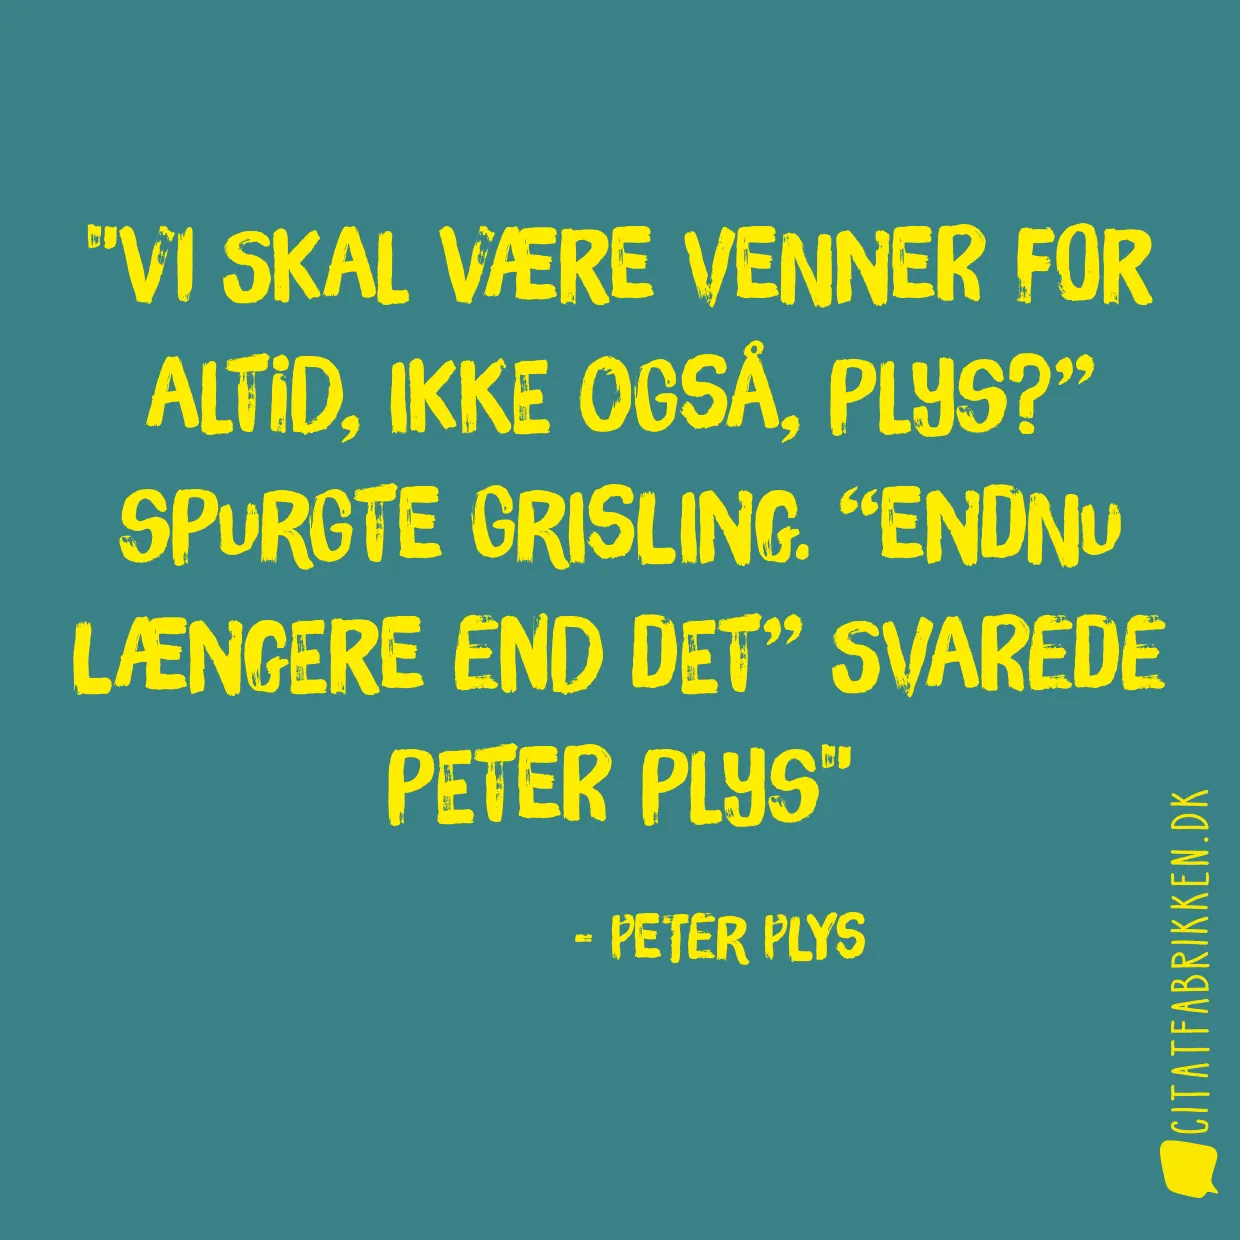 Vi skal være venner for altid, ikke også, Plys?” spurgte Grisling. “Endnu længere end det” svarede Peter Plys